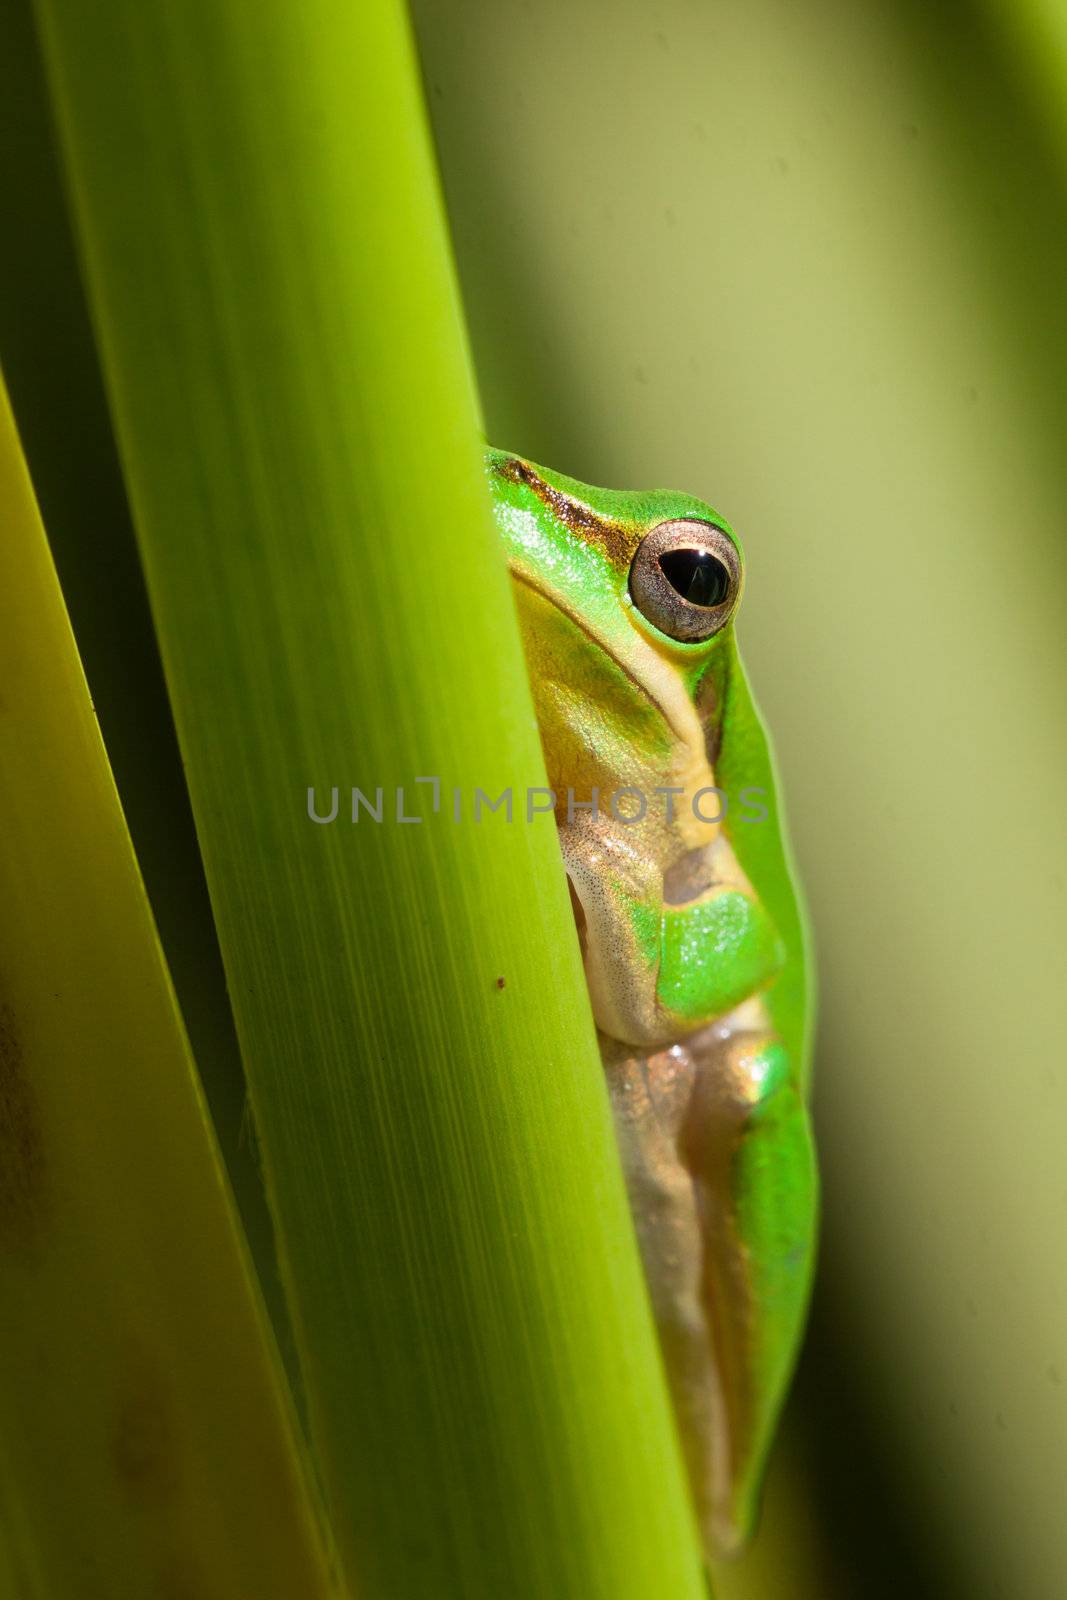 Dwarf tree frog by Jaykayl